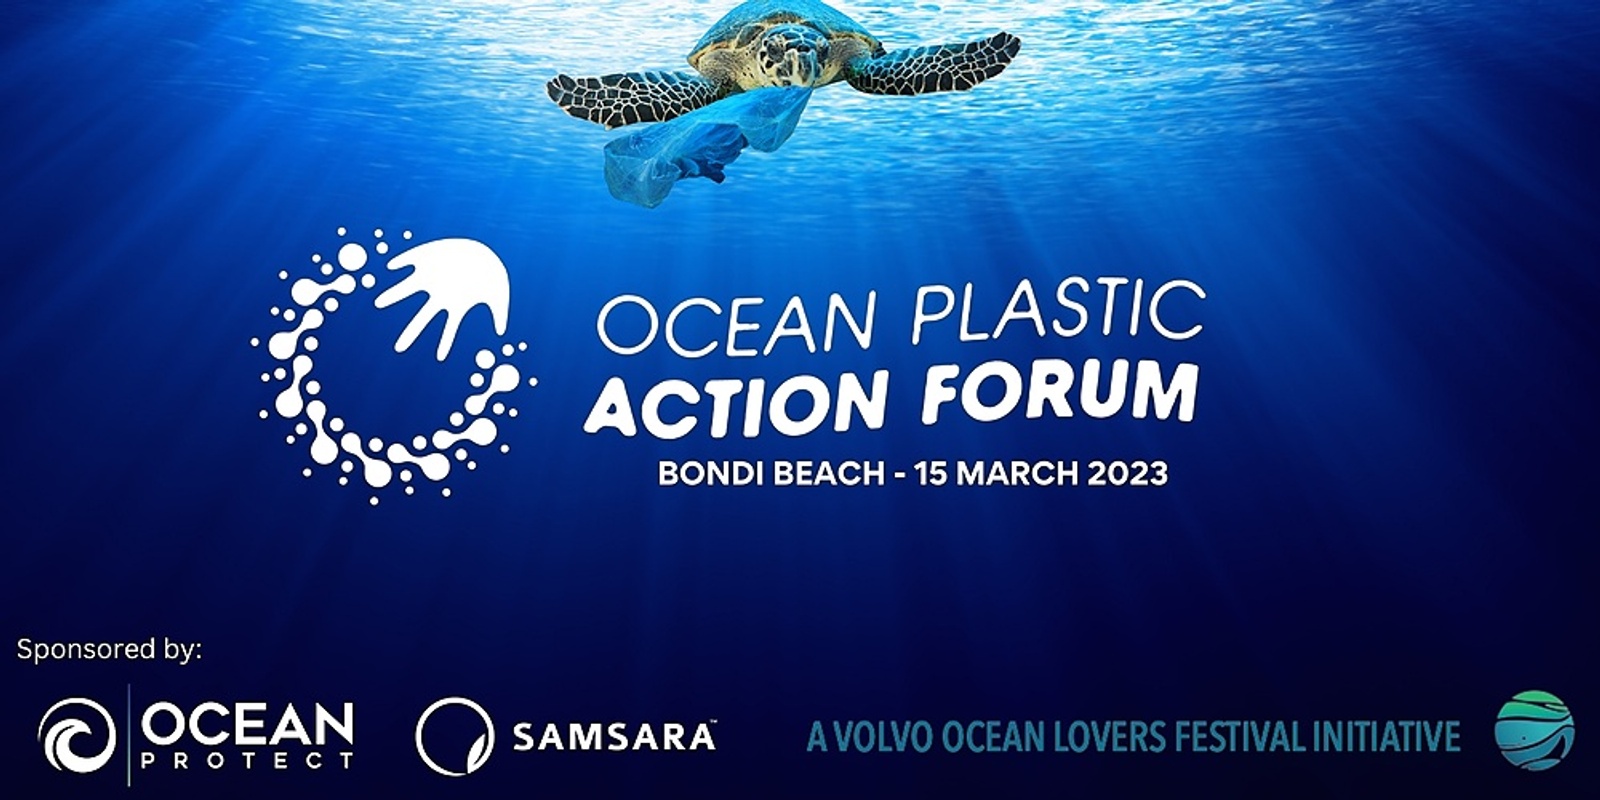 Banner image for Volvo Ocean Lovers Festival - Ocean Plastic Action Forum 